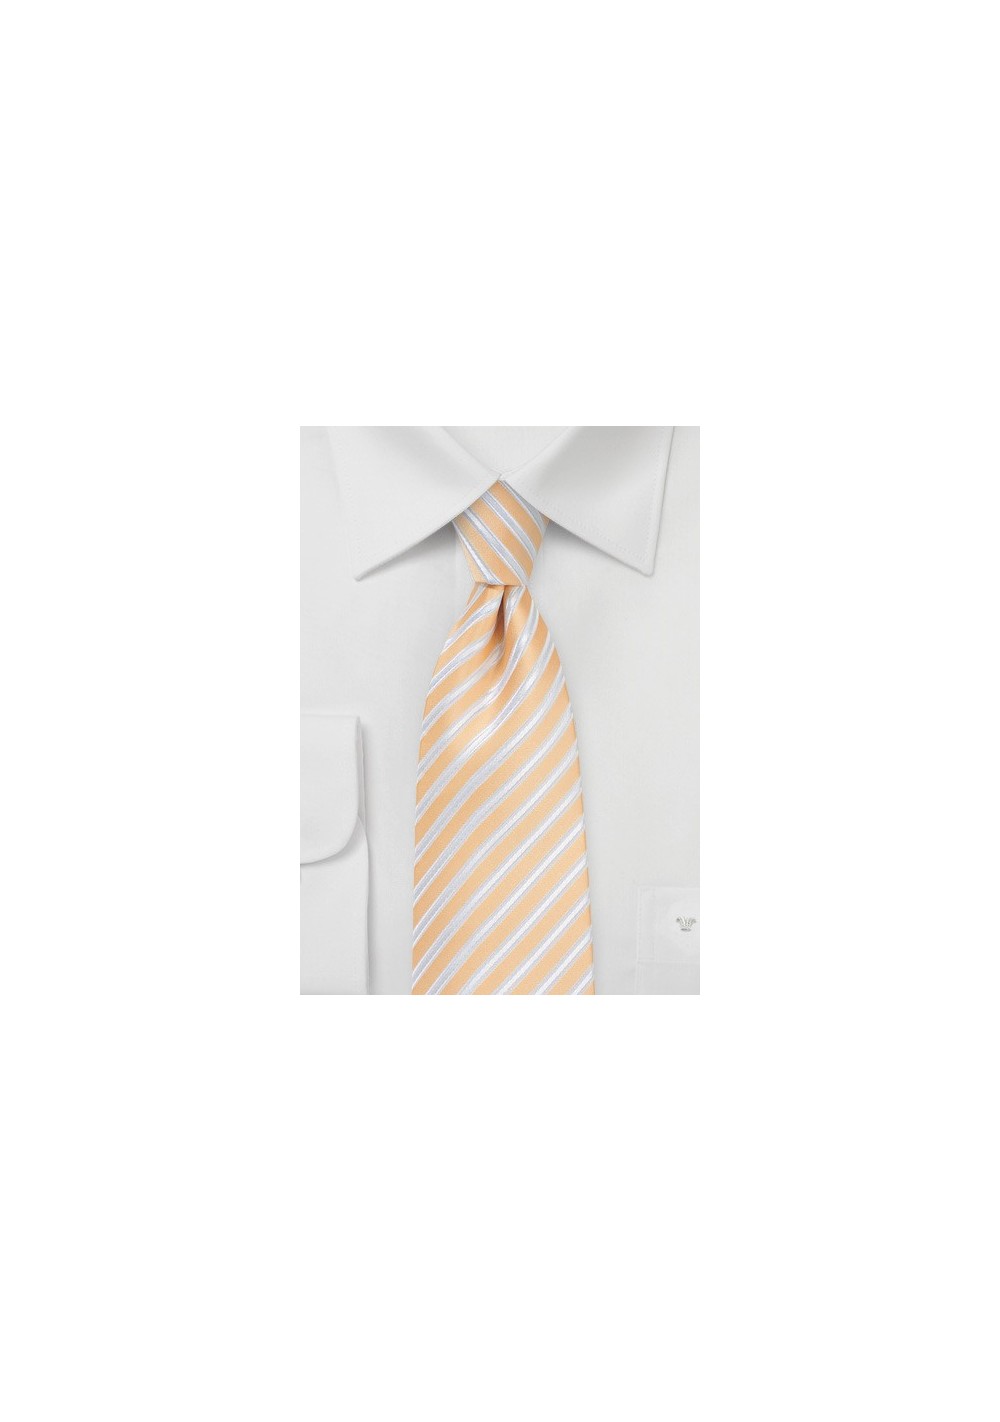 Sunburst Orange Striped Necktie